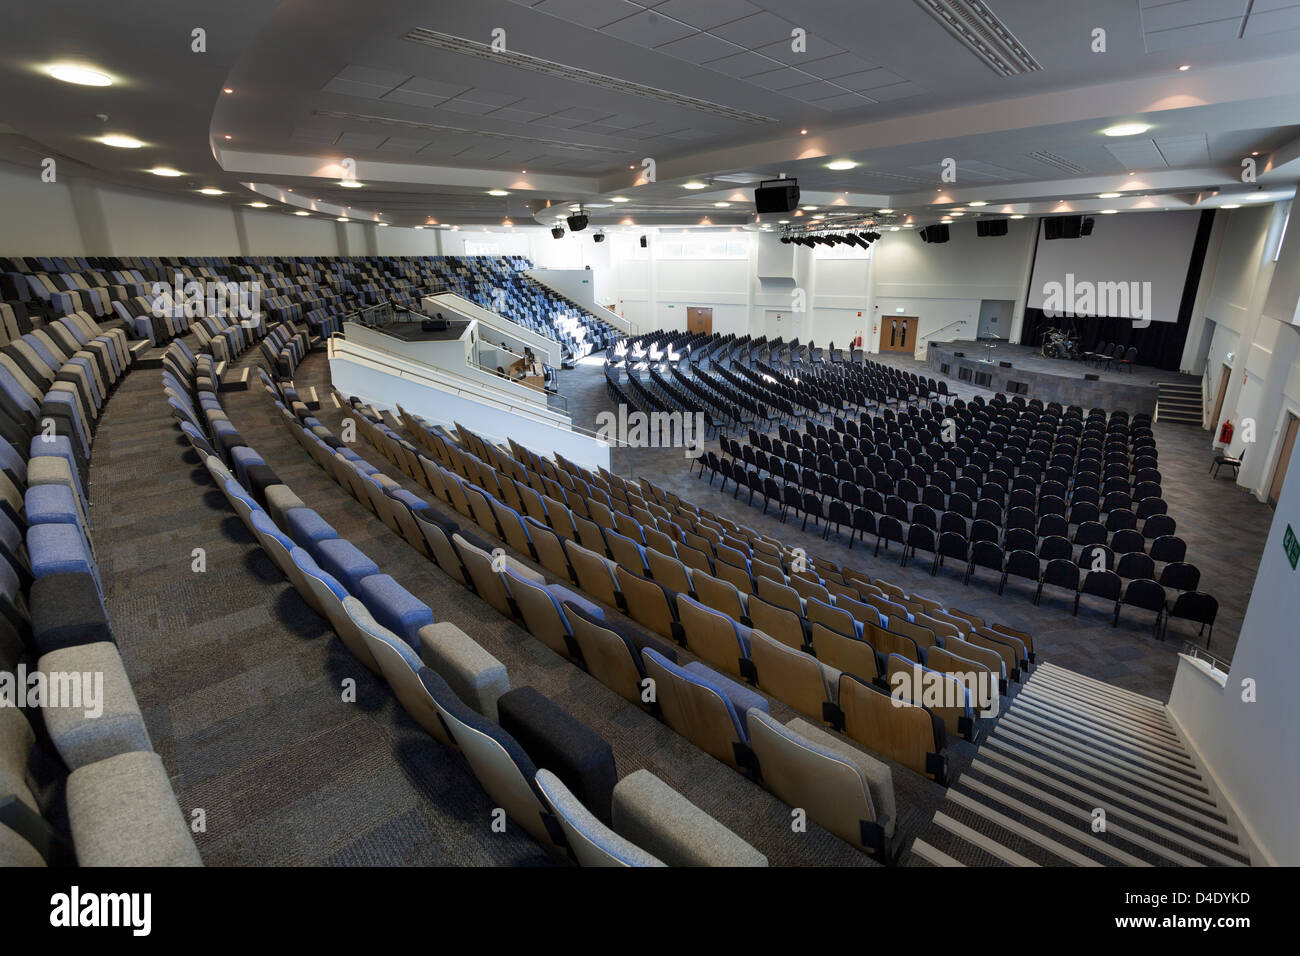 Kings Community Church moderne Kirche, hold1200 Menschen mit abgestufte Sitzgelegenheiten. Stockfoto